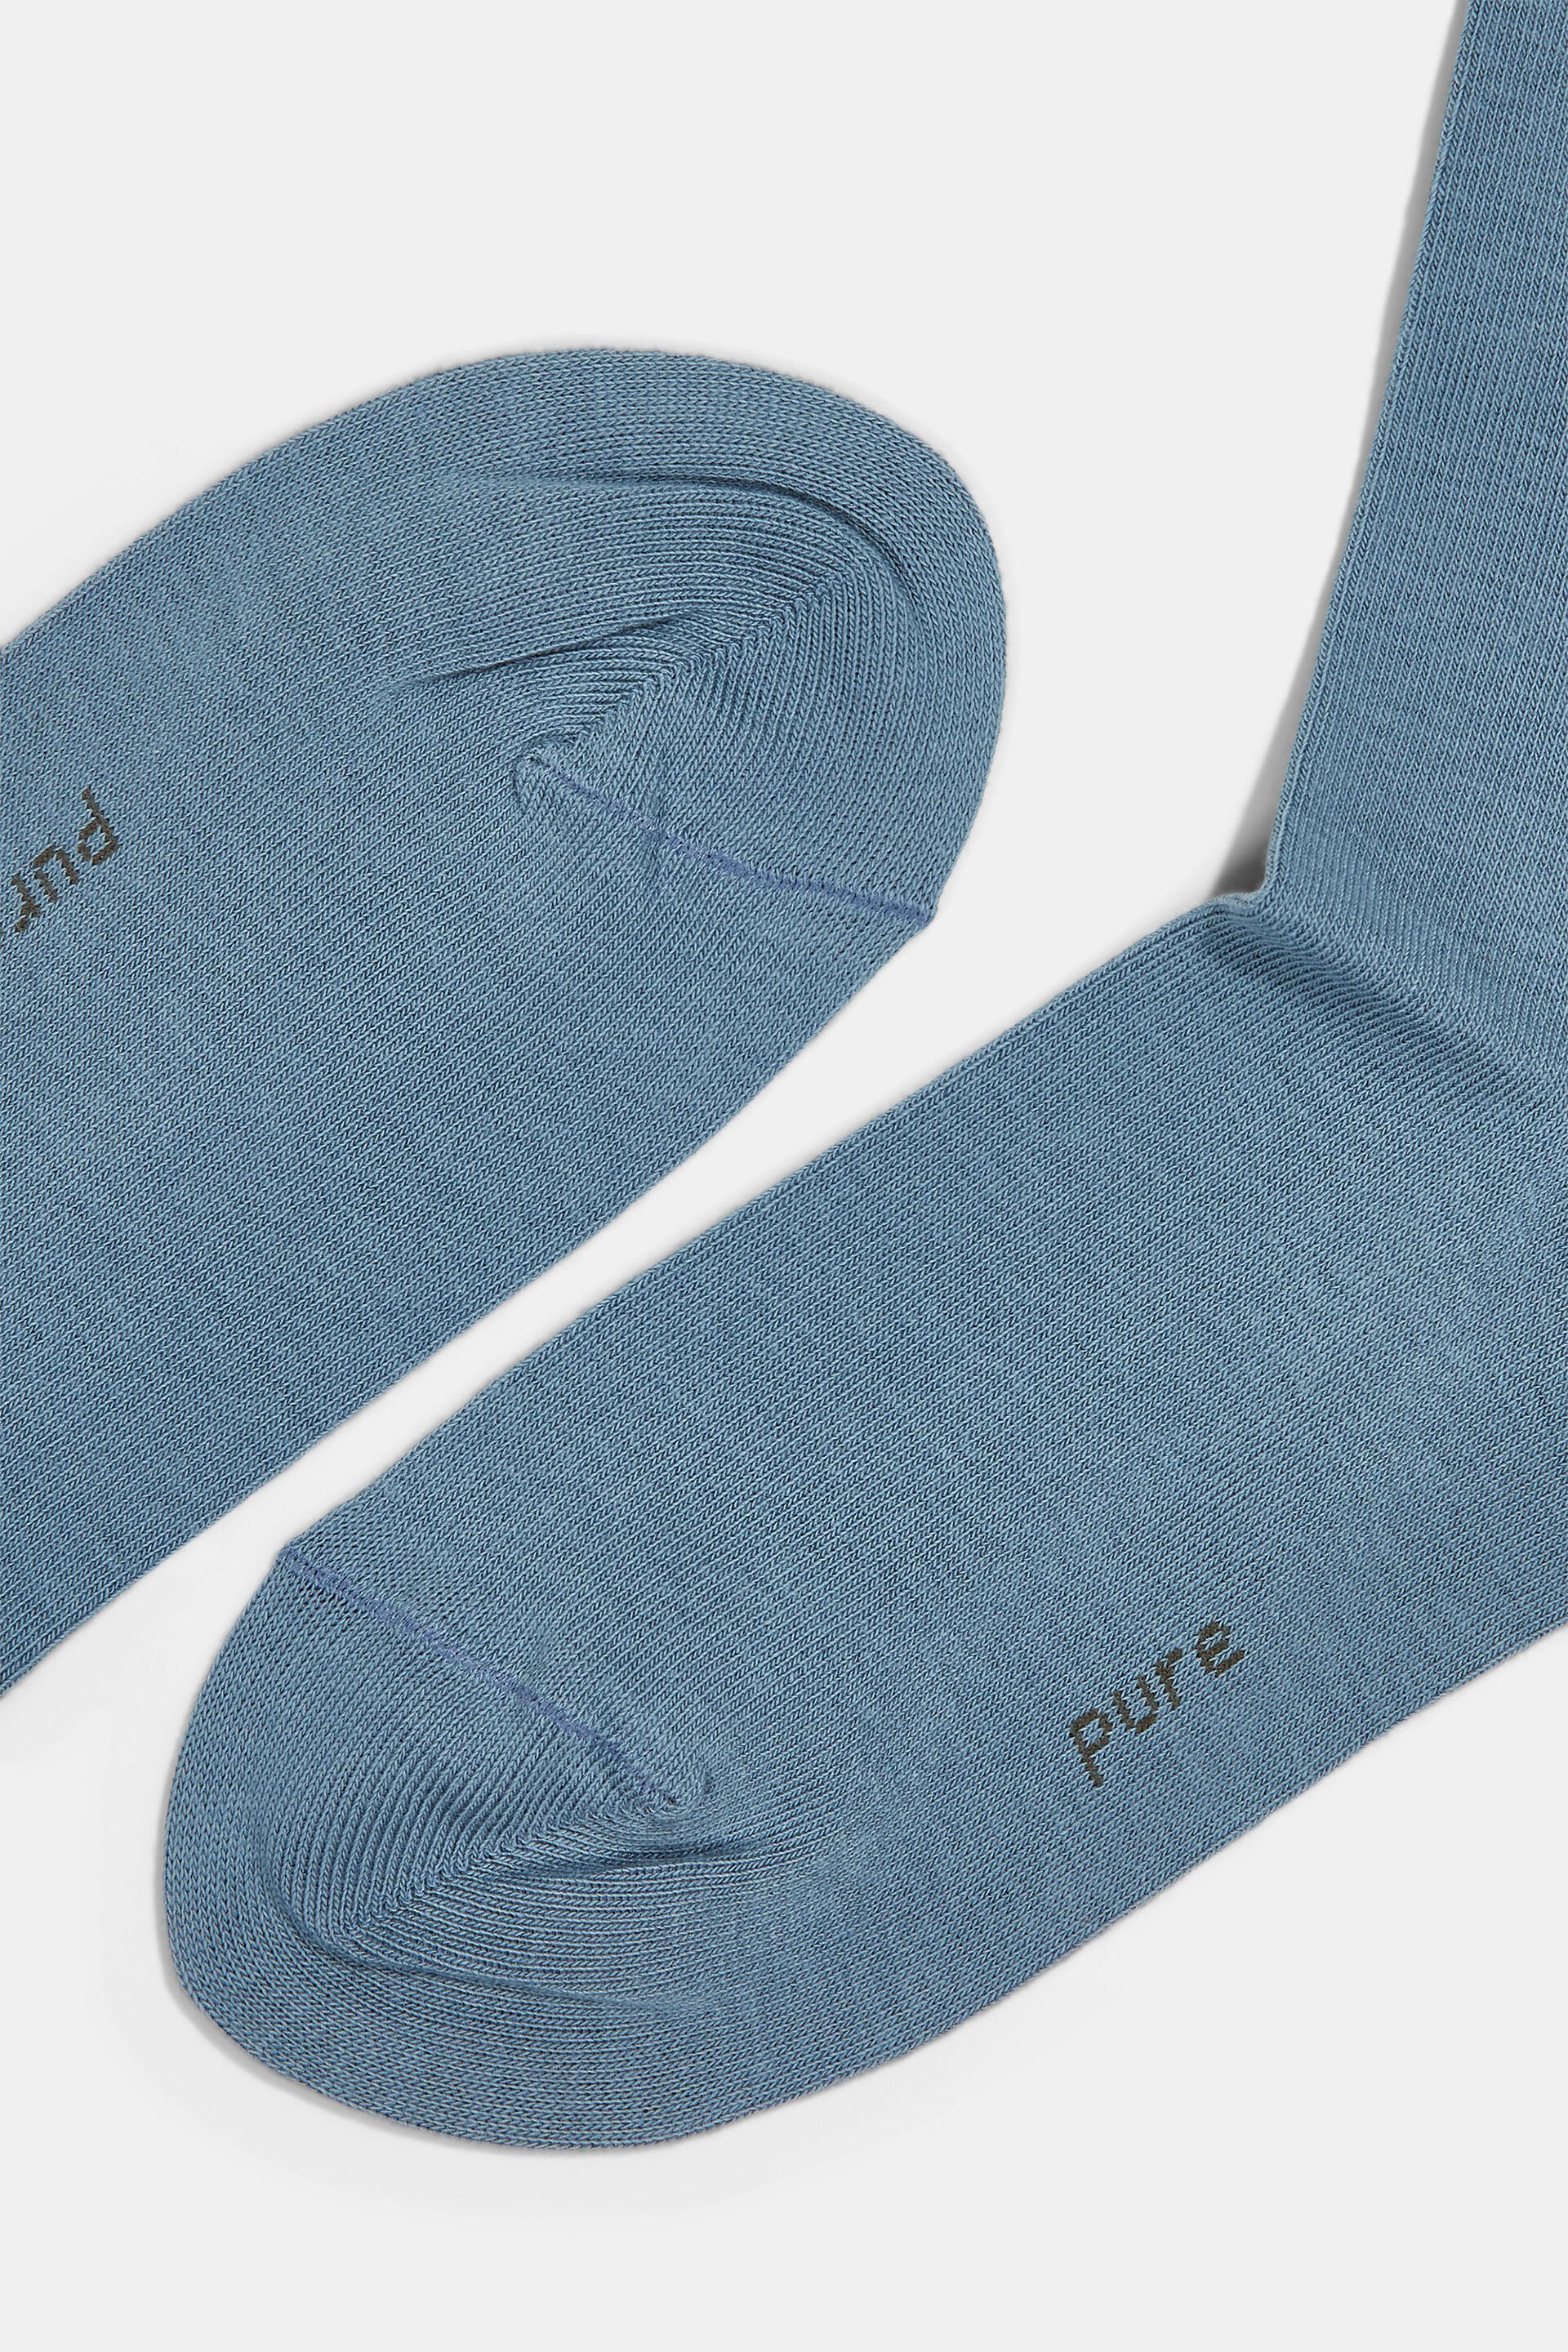 Esprit Mode Doppelpack Socken aus Bio-Baumwolle gemischter